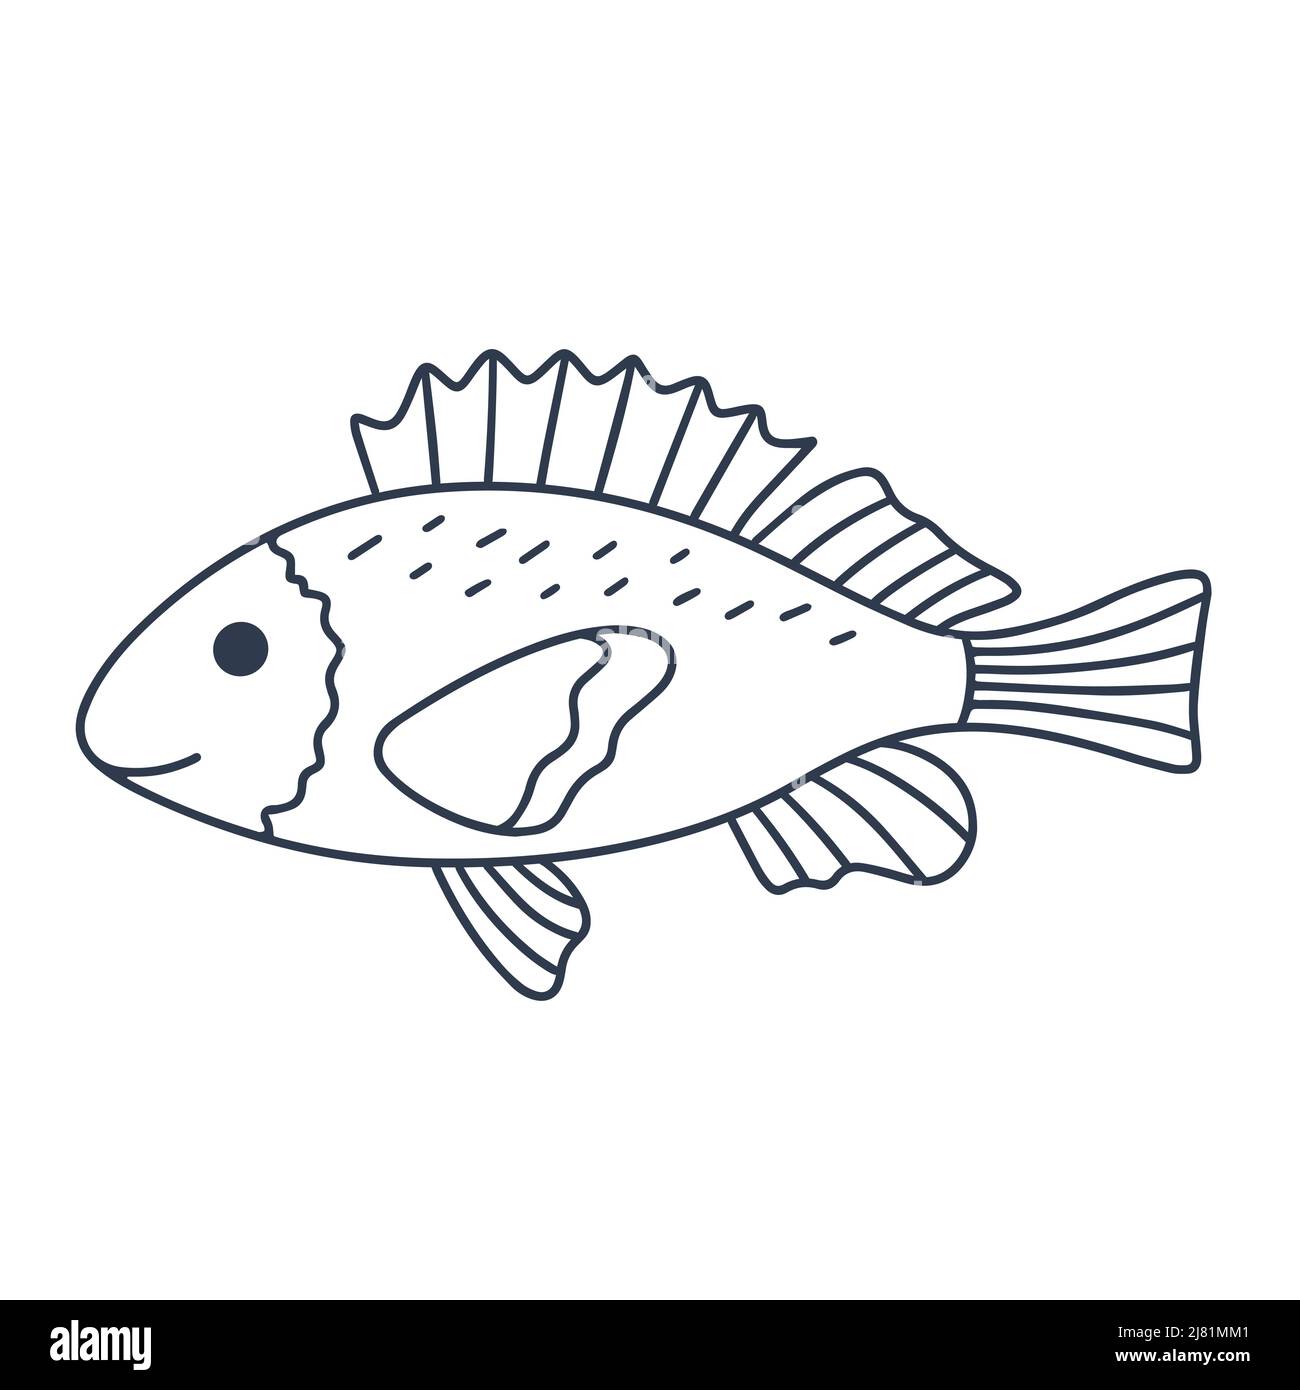 Einzelfisch mit schönen Flossen-Doodle-Stil Stock Vektor